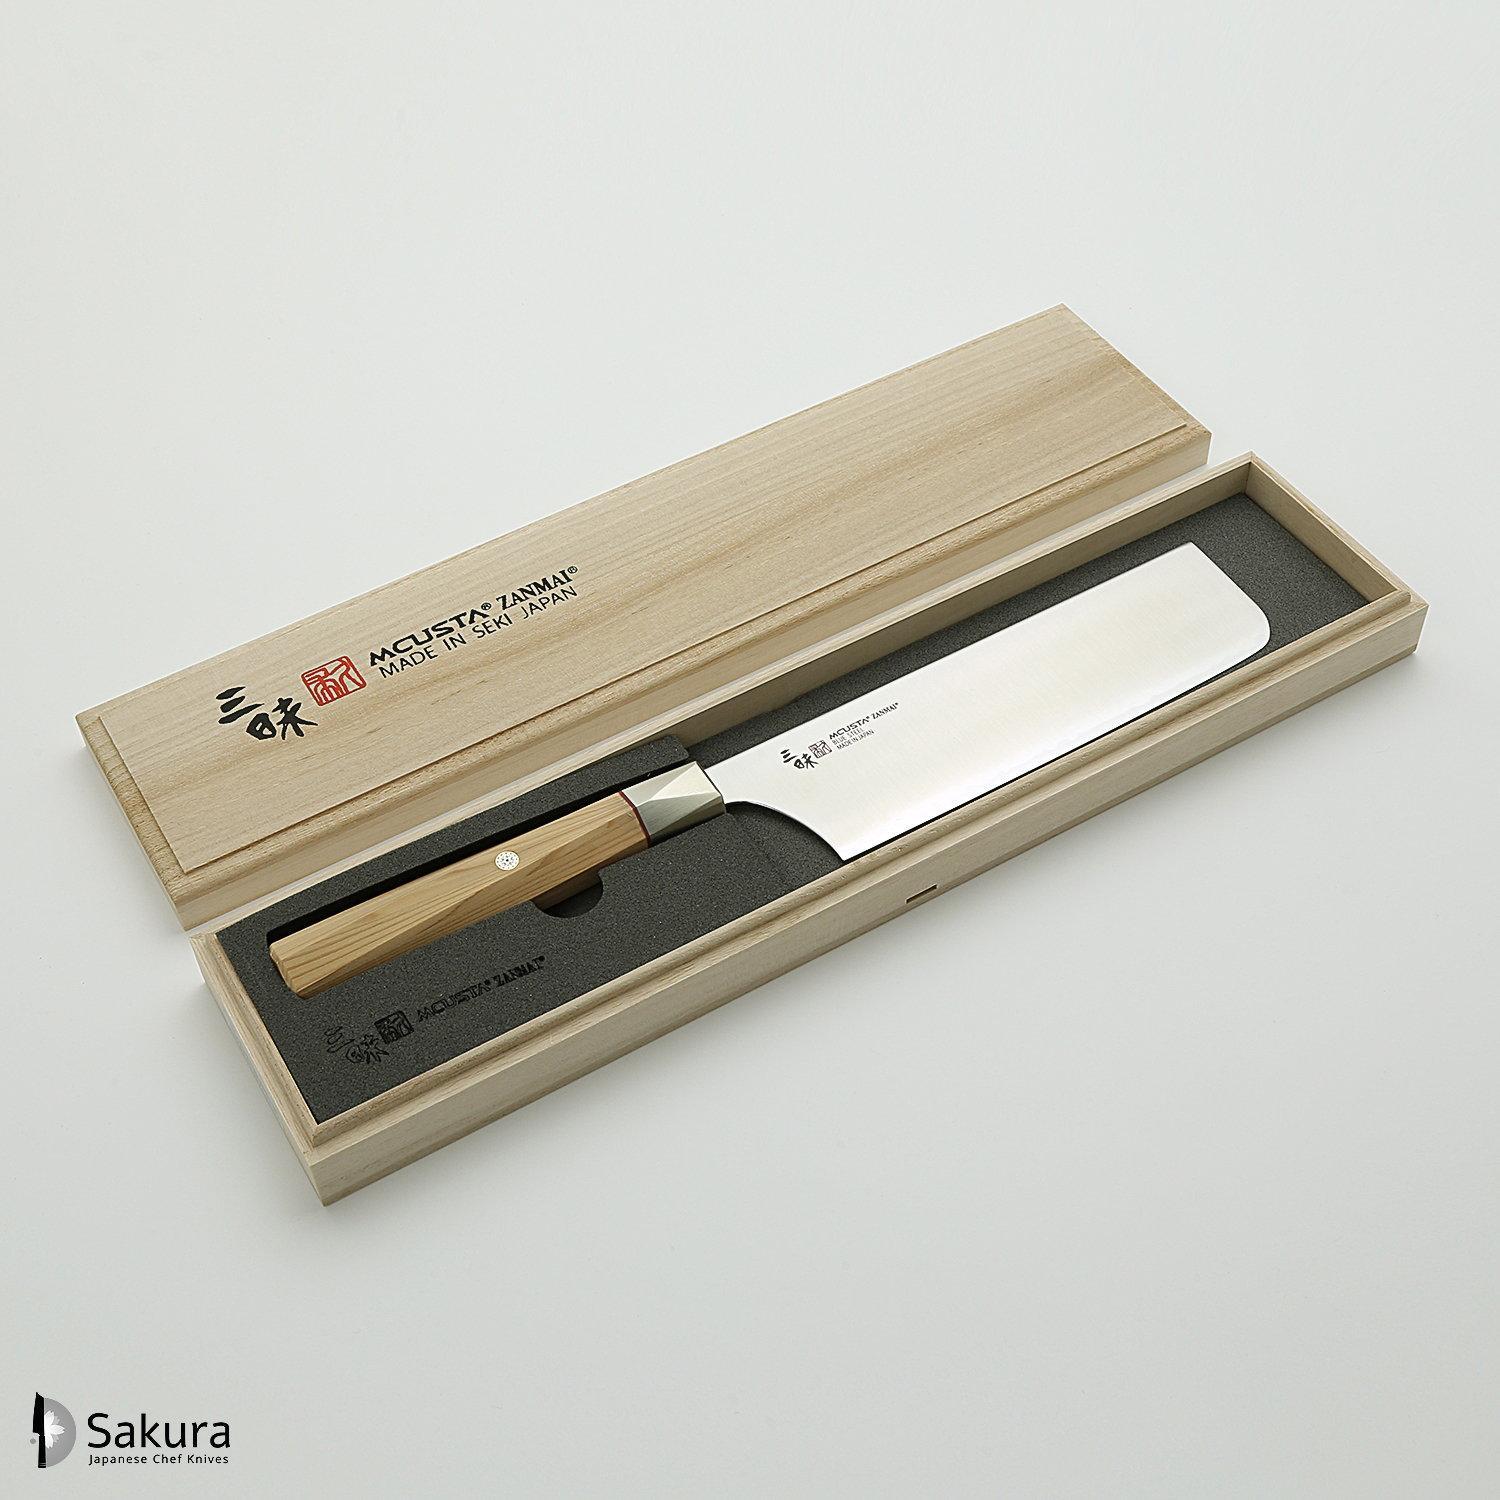 סכין ירקות נַקִירִי 165מ״מ מחושלת בעבודת יד 3 שכבות: פלדת פחמן יפנית מתקדמת מסוג Aogami Super עטופה פלדת אל-חלד גימור מט מלוטש מקוסטה זאנמאיי יפן ZBX-5008B